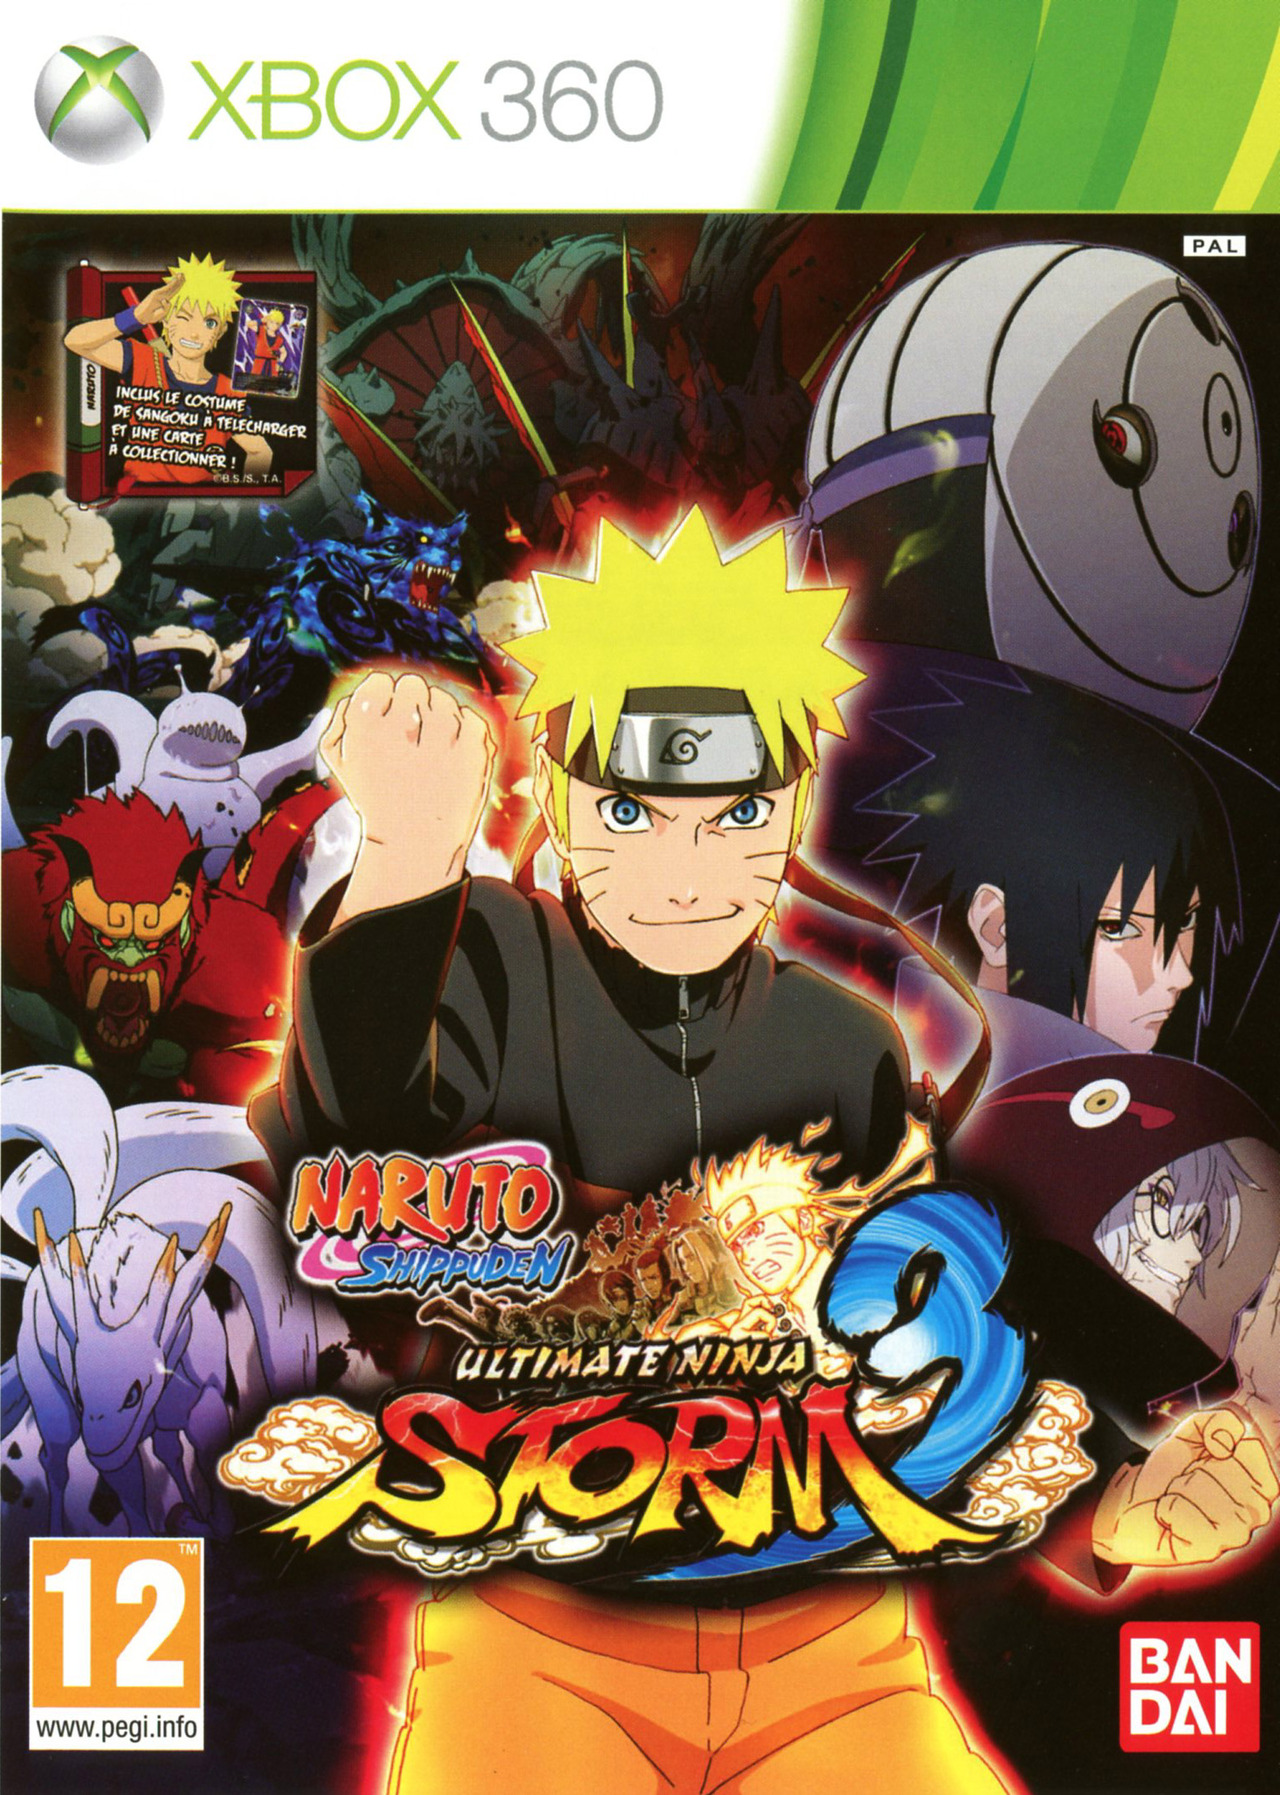 Des images pour Naruto Storm Revolution  Gamekult PlayTrackr 